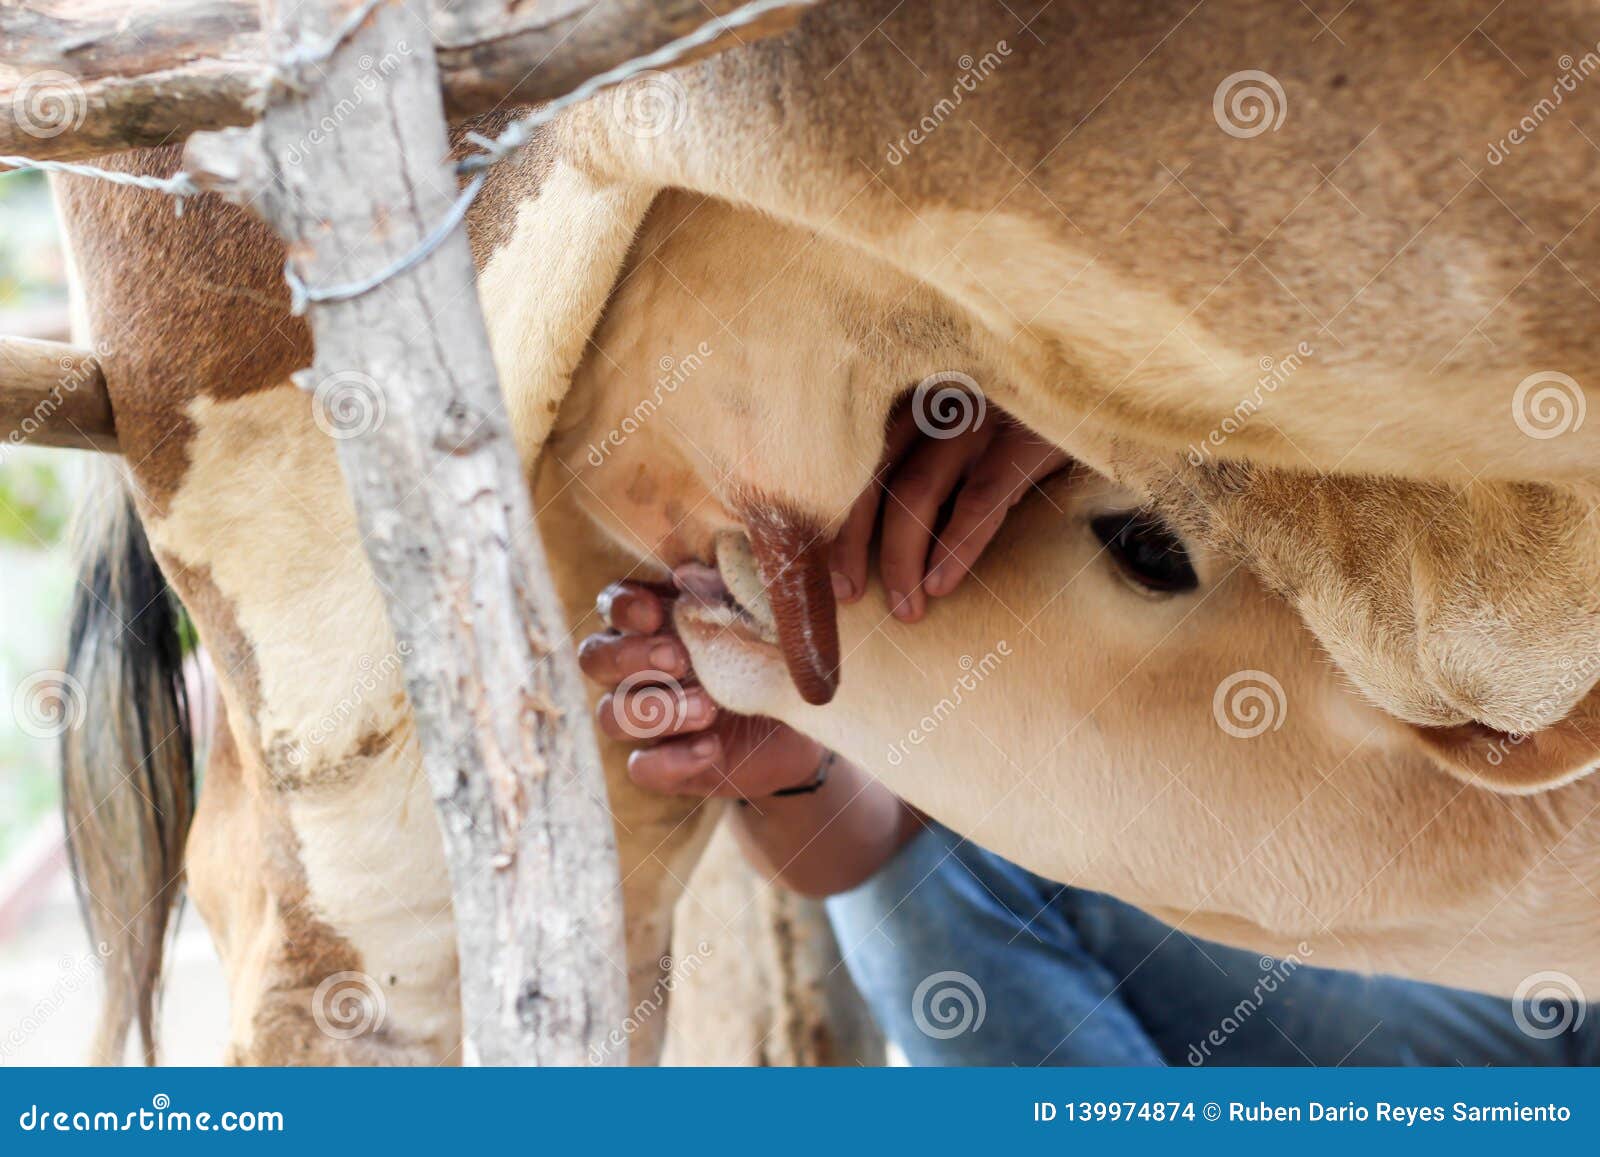 Le Jeune Taureau Mange Du Lait Maternel De La Mere Photo Stock Image Du Veau Vache